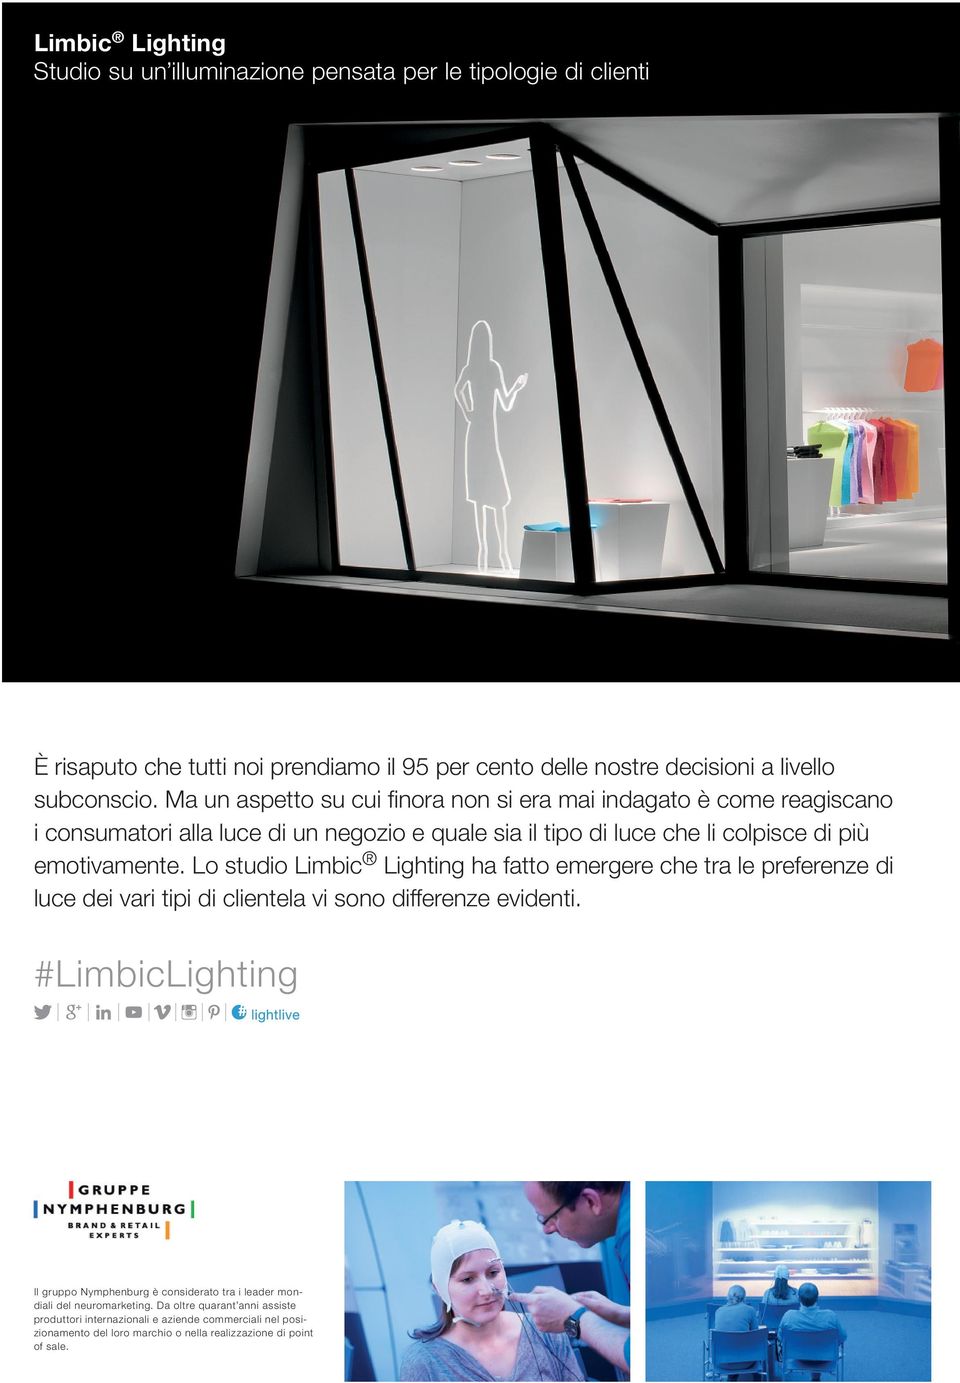 Lo studio Limbic Lighting ha fatto emergere che tra le preferenze di luce dei vari tipi di clientela vi sono differenze evidenti.